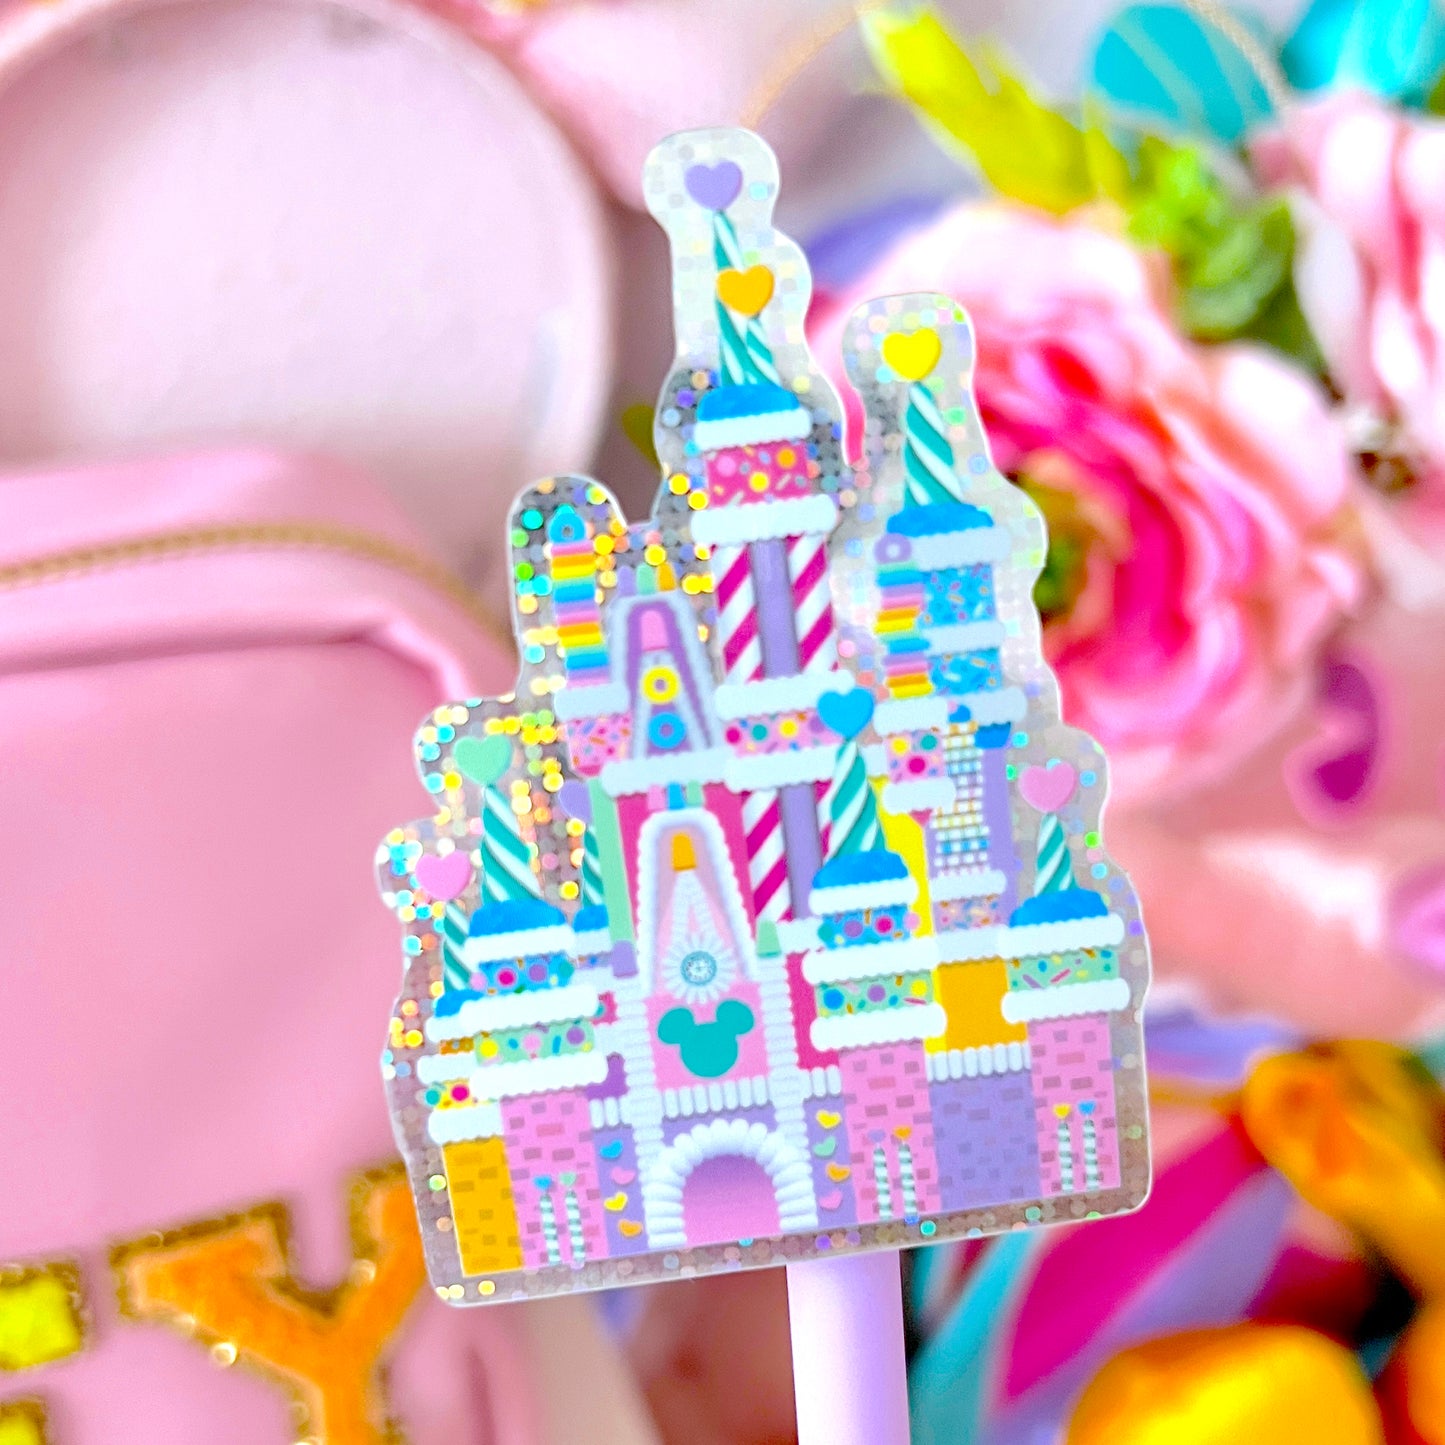 Glitter Waterproof Sticker - Candy Hearts Castle